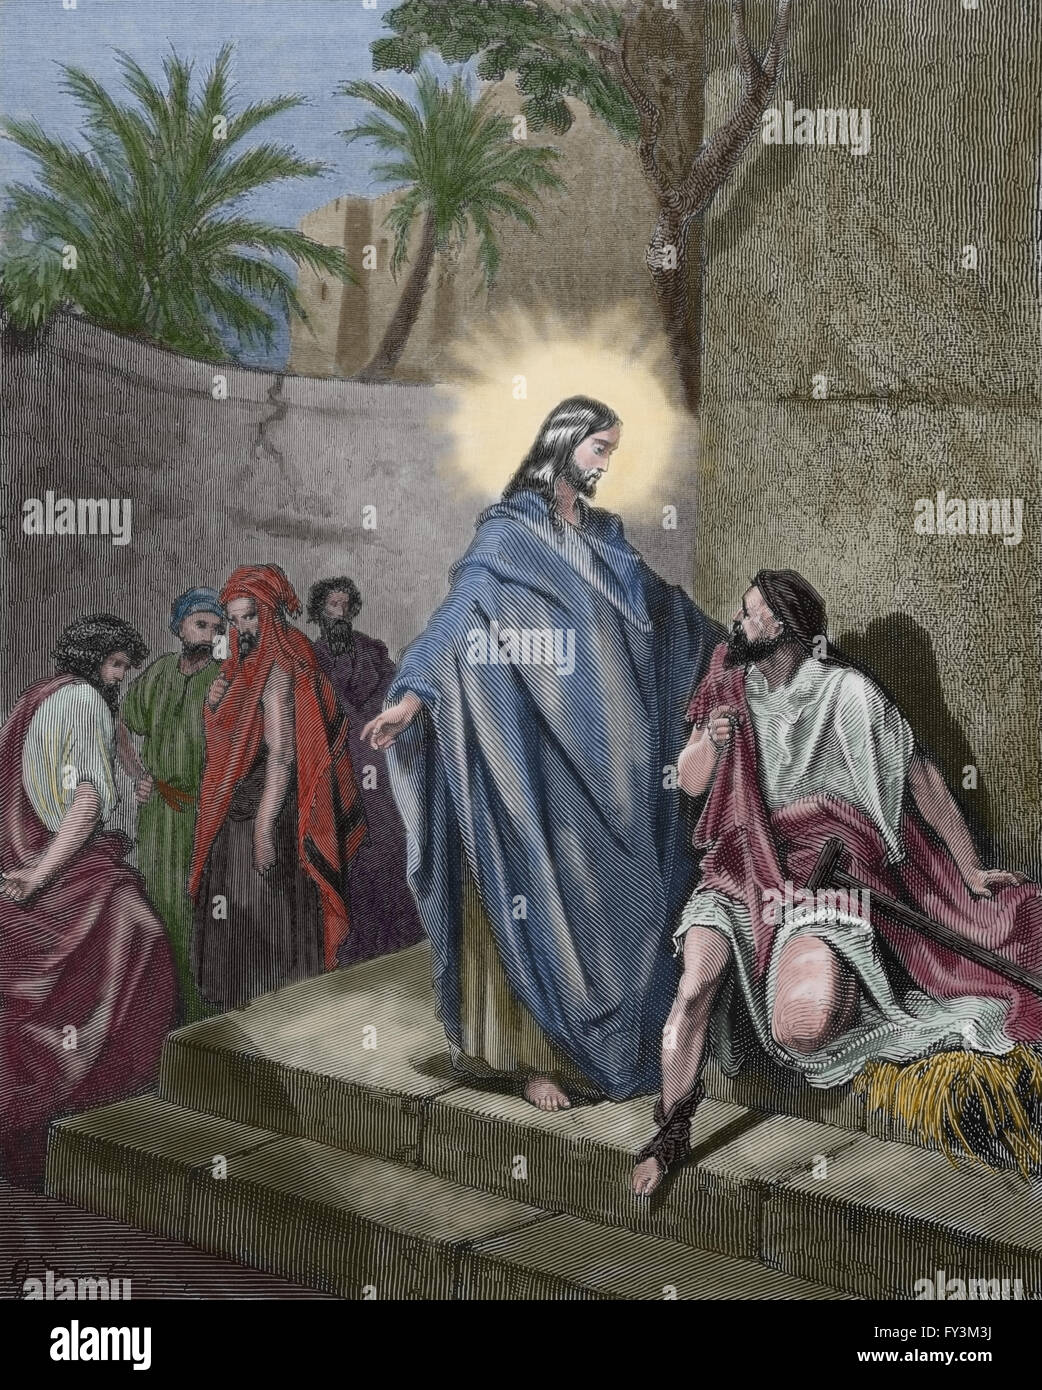 Neuen Testaments. Der dumme Mann heilte Jesus besaß (Matthäus 12,22). Stich von Gustave Dore. Farbe. Stockfoto